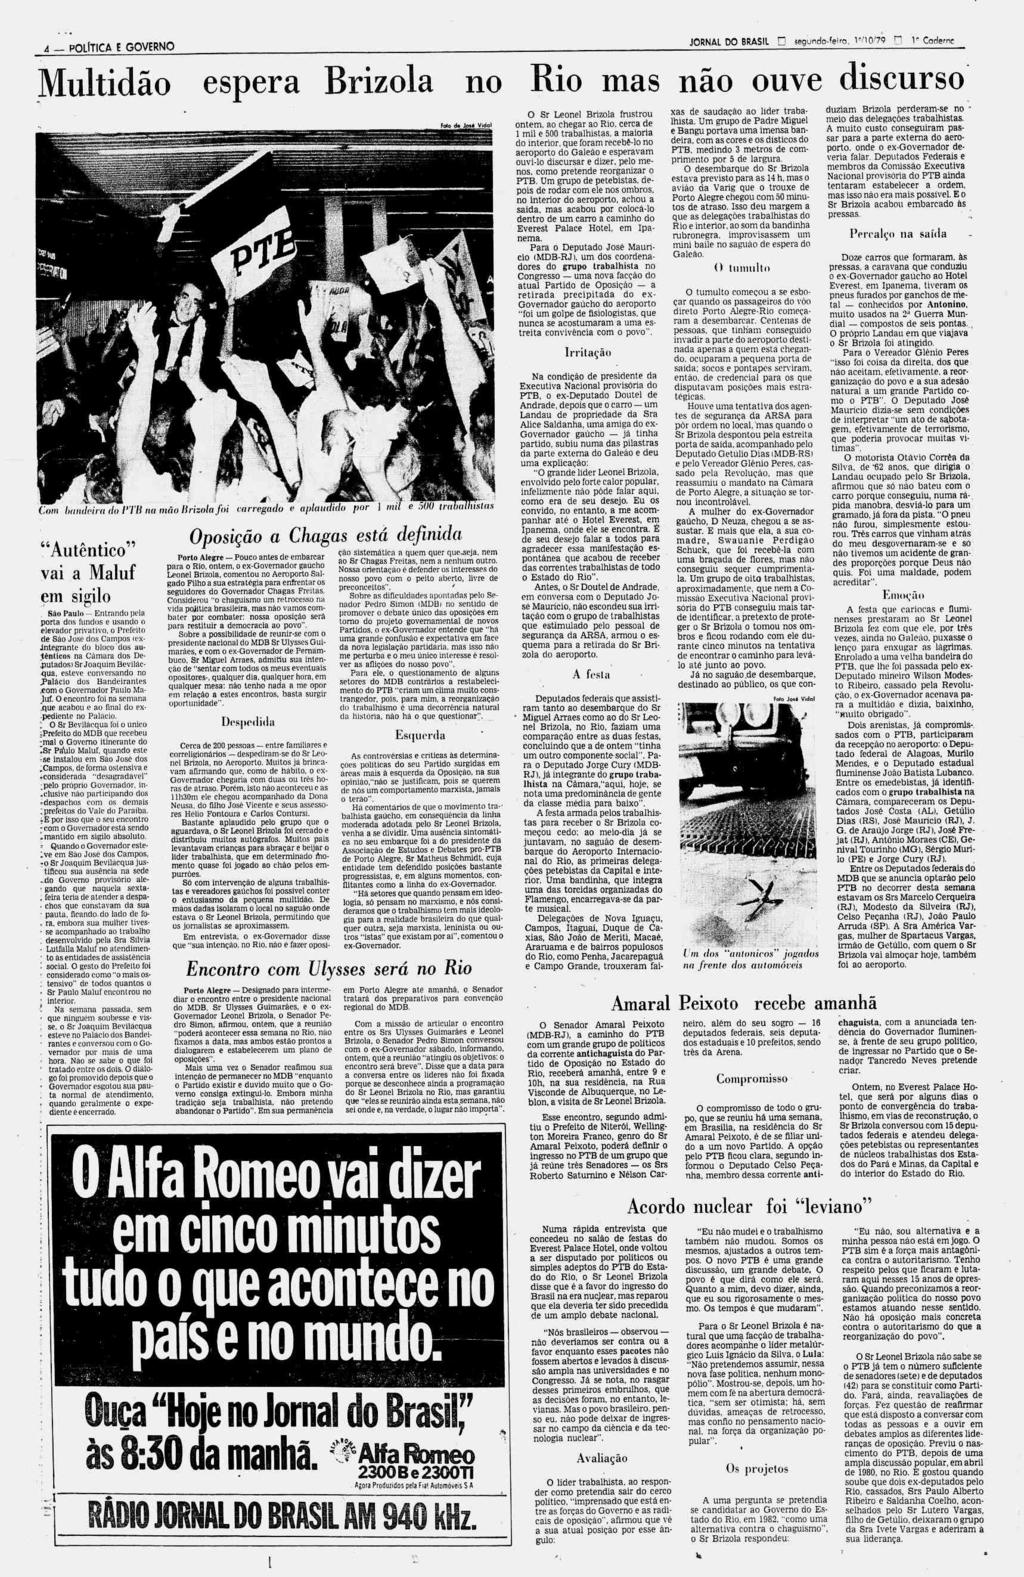 Livro Petrópolis 1973: A História de um Interzonal de Xadrez  MI Di  Berardino, Antonio Claudio, MF A. Aranha & MF J. Costa [Sob encomenda:  Envio em 20 dias] - A lojinha